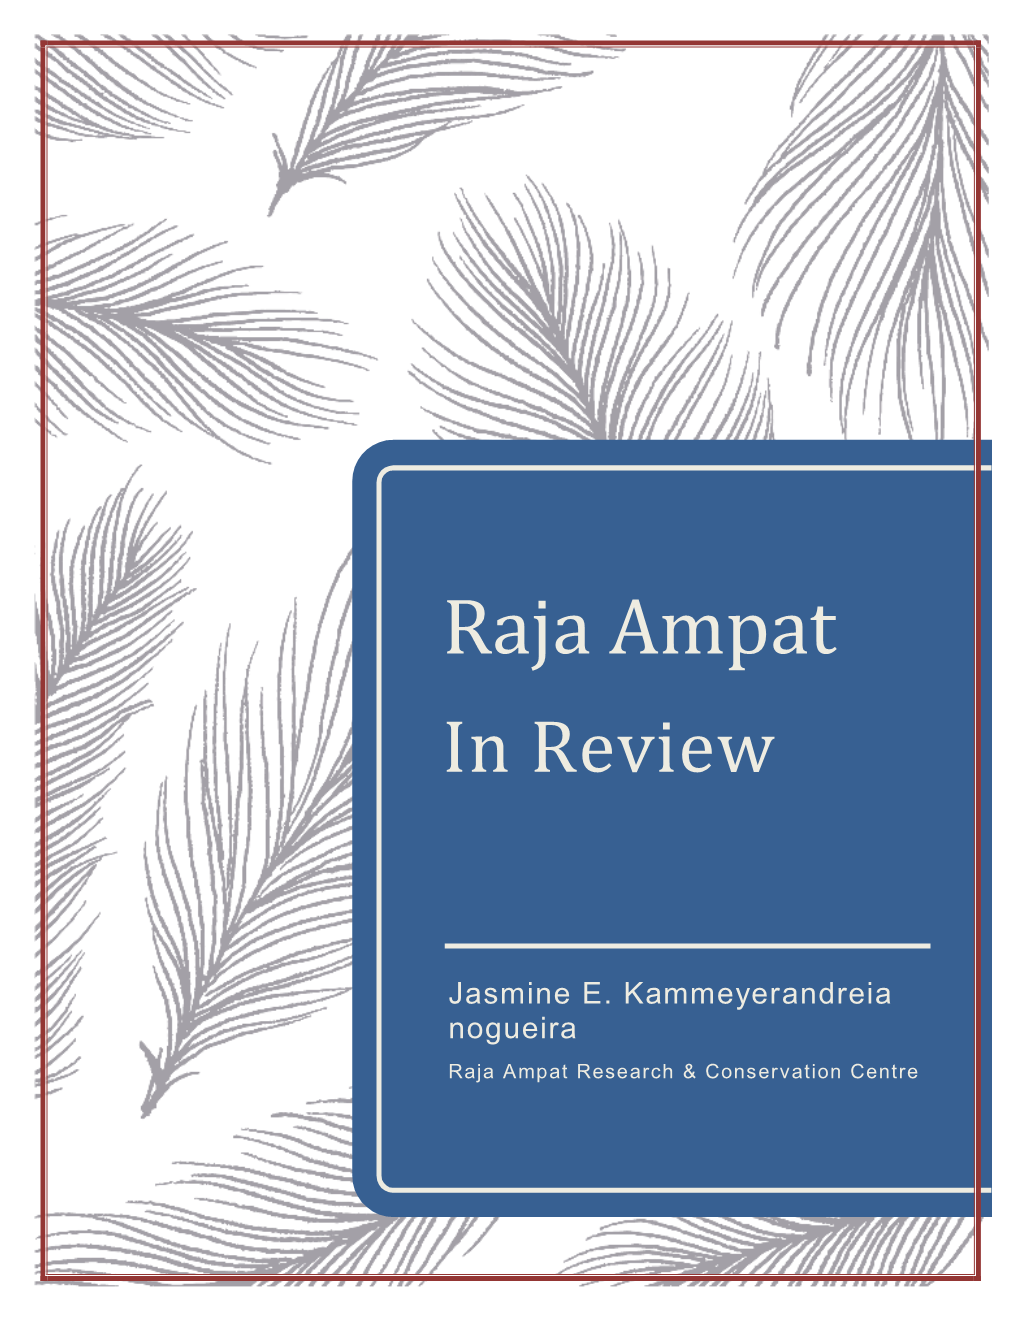 Raja Ampat in Review